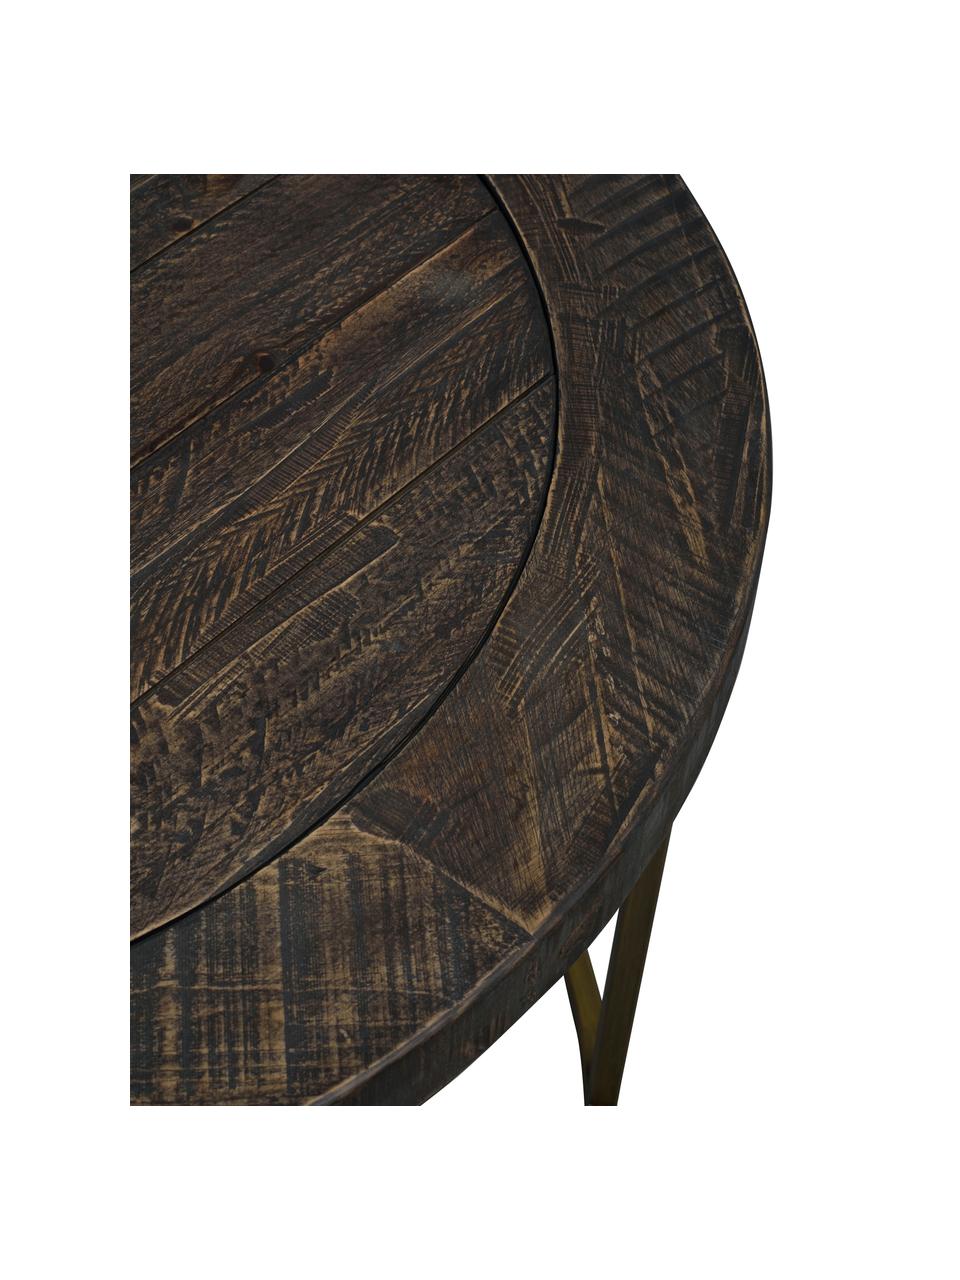 Stolik kawowy w stylu industrialnym Dalton, Blat: drewno sosnowe, barwione,, Stelaż: metal lakierowany, Szarobrązowy, odcienie mosiądzu, Ø 80 x W 53 cm